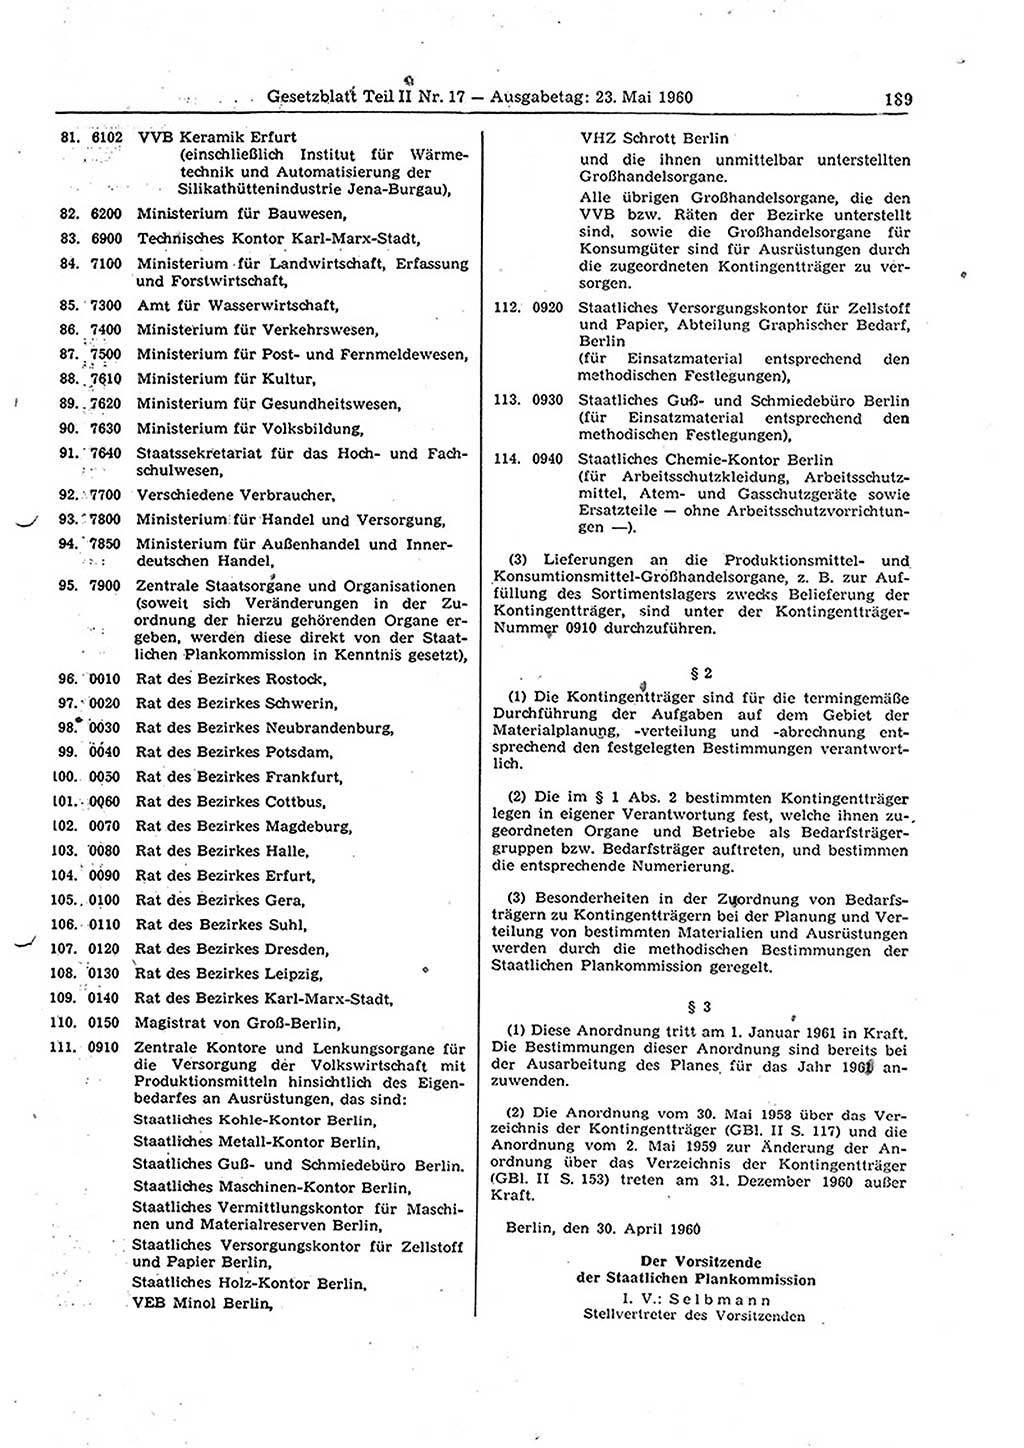 Gesetzblatt (GBl.) der Deutschen Demokratischen Republik (DDR) Teil ⅠⅠ 1960, Seite 189 (GBl. DDR ⅠⅠ 1960, S. 189)